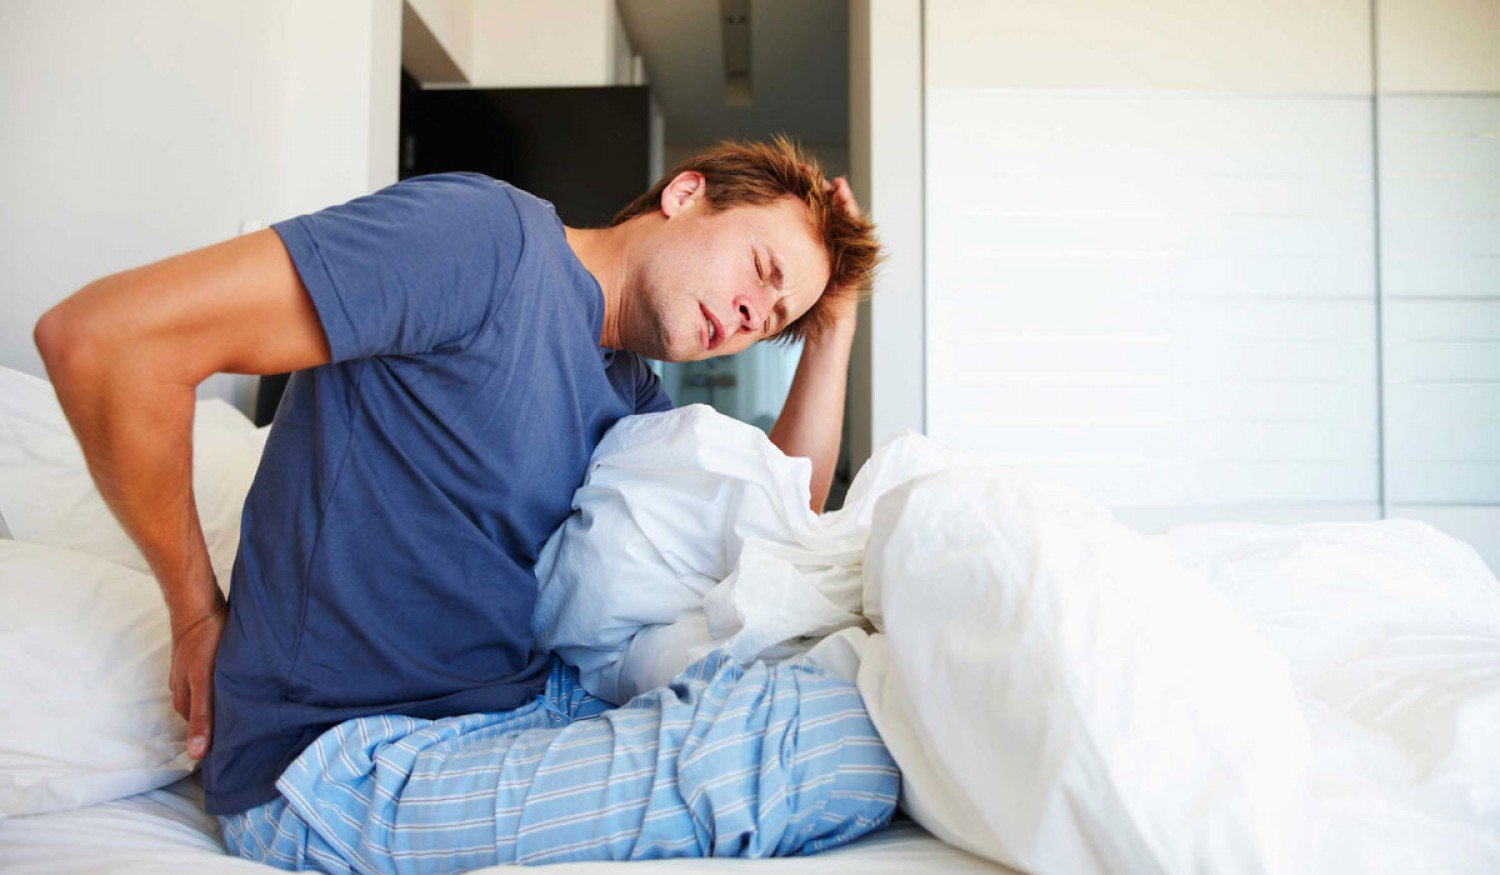 استشاري يوضح سبب الإرهاق وآلام العضلات عند الاستيقاظ من النوم